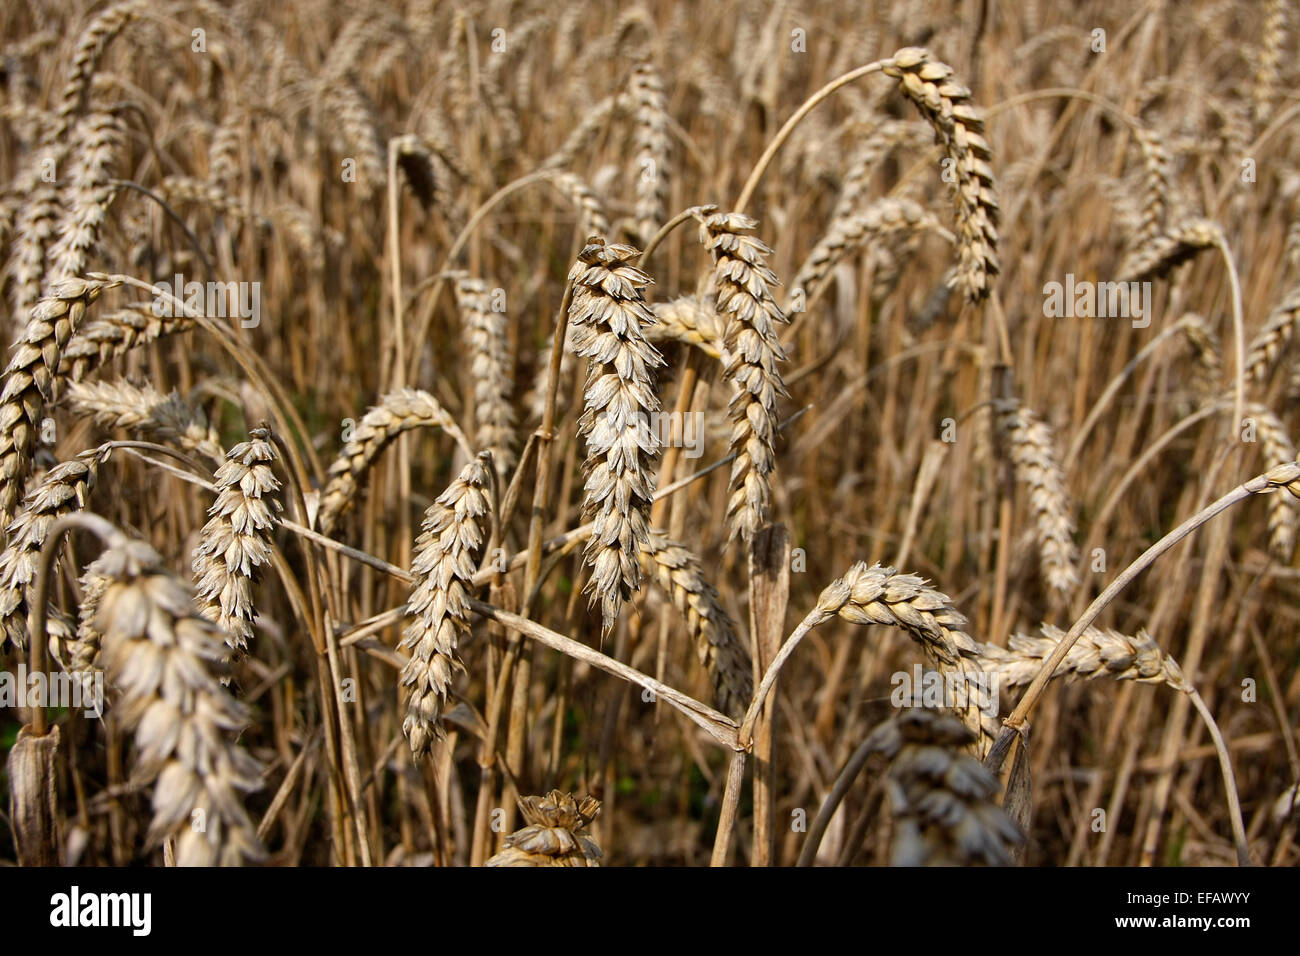 Ein Bereich der Reife Ähren. Der Weizen wird in der Regel durch Mähdrescher  geerntet. Weizen ist für Menschen in vielen Ländern als Grundnahrungsmittel  Getreide und hat eine große Bedeutung in der Tierfütterung.